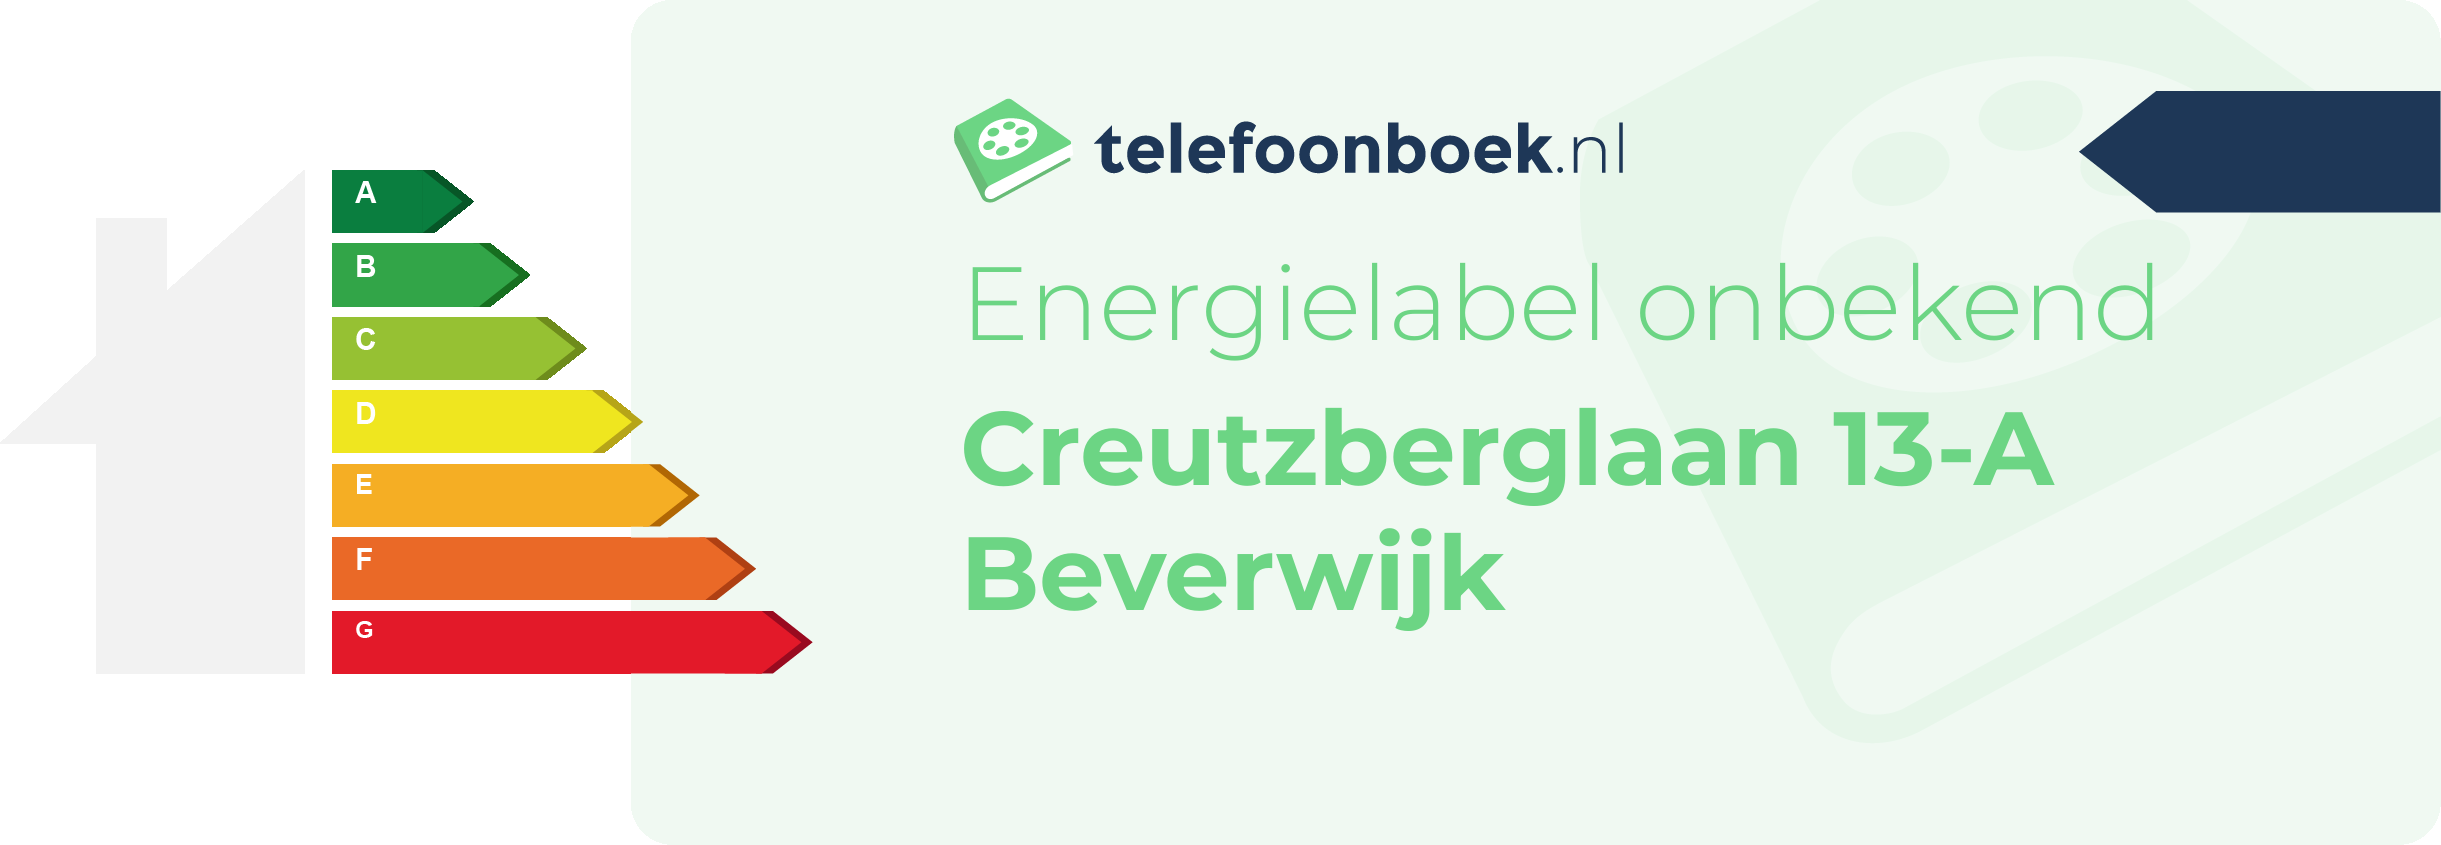 Energielabel Creutzberglaan 13-A Beverwijk